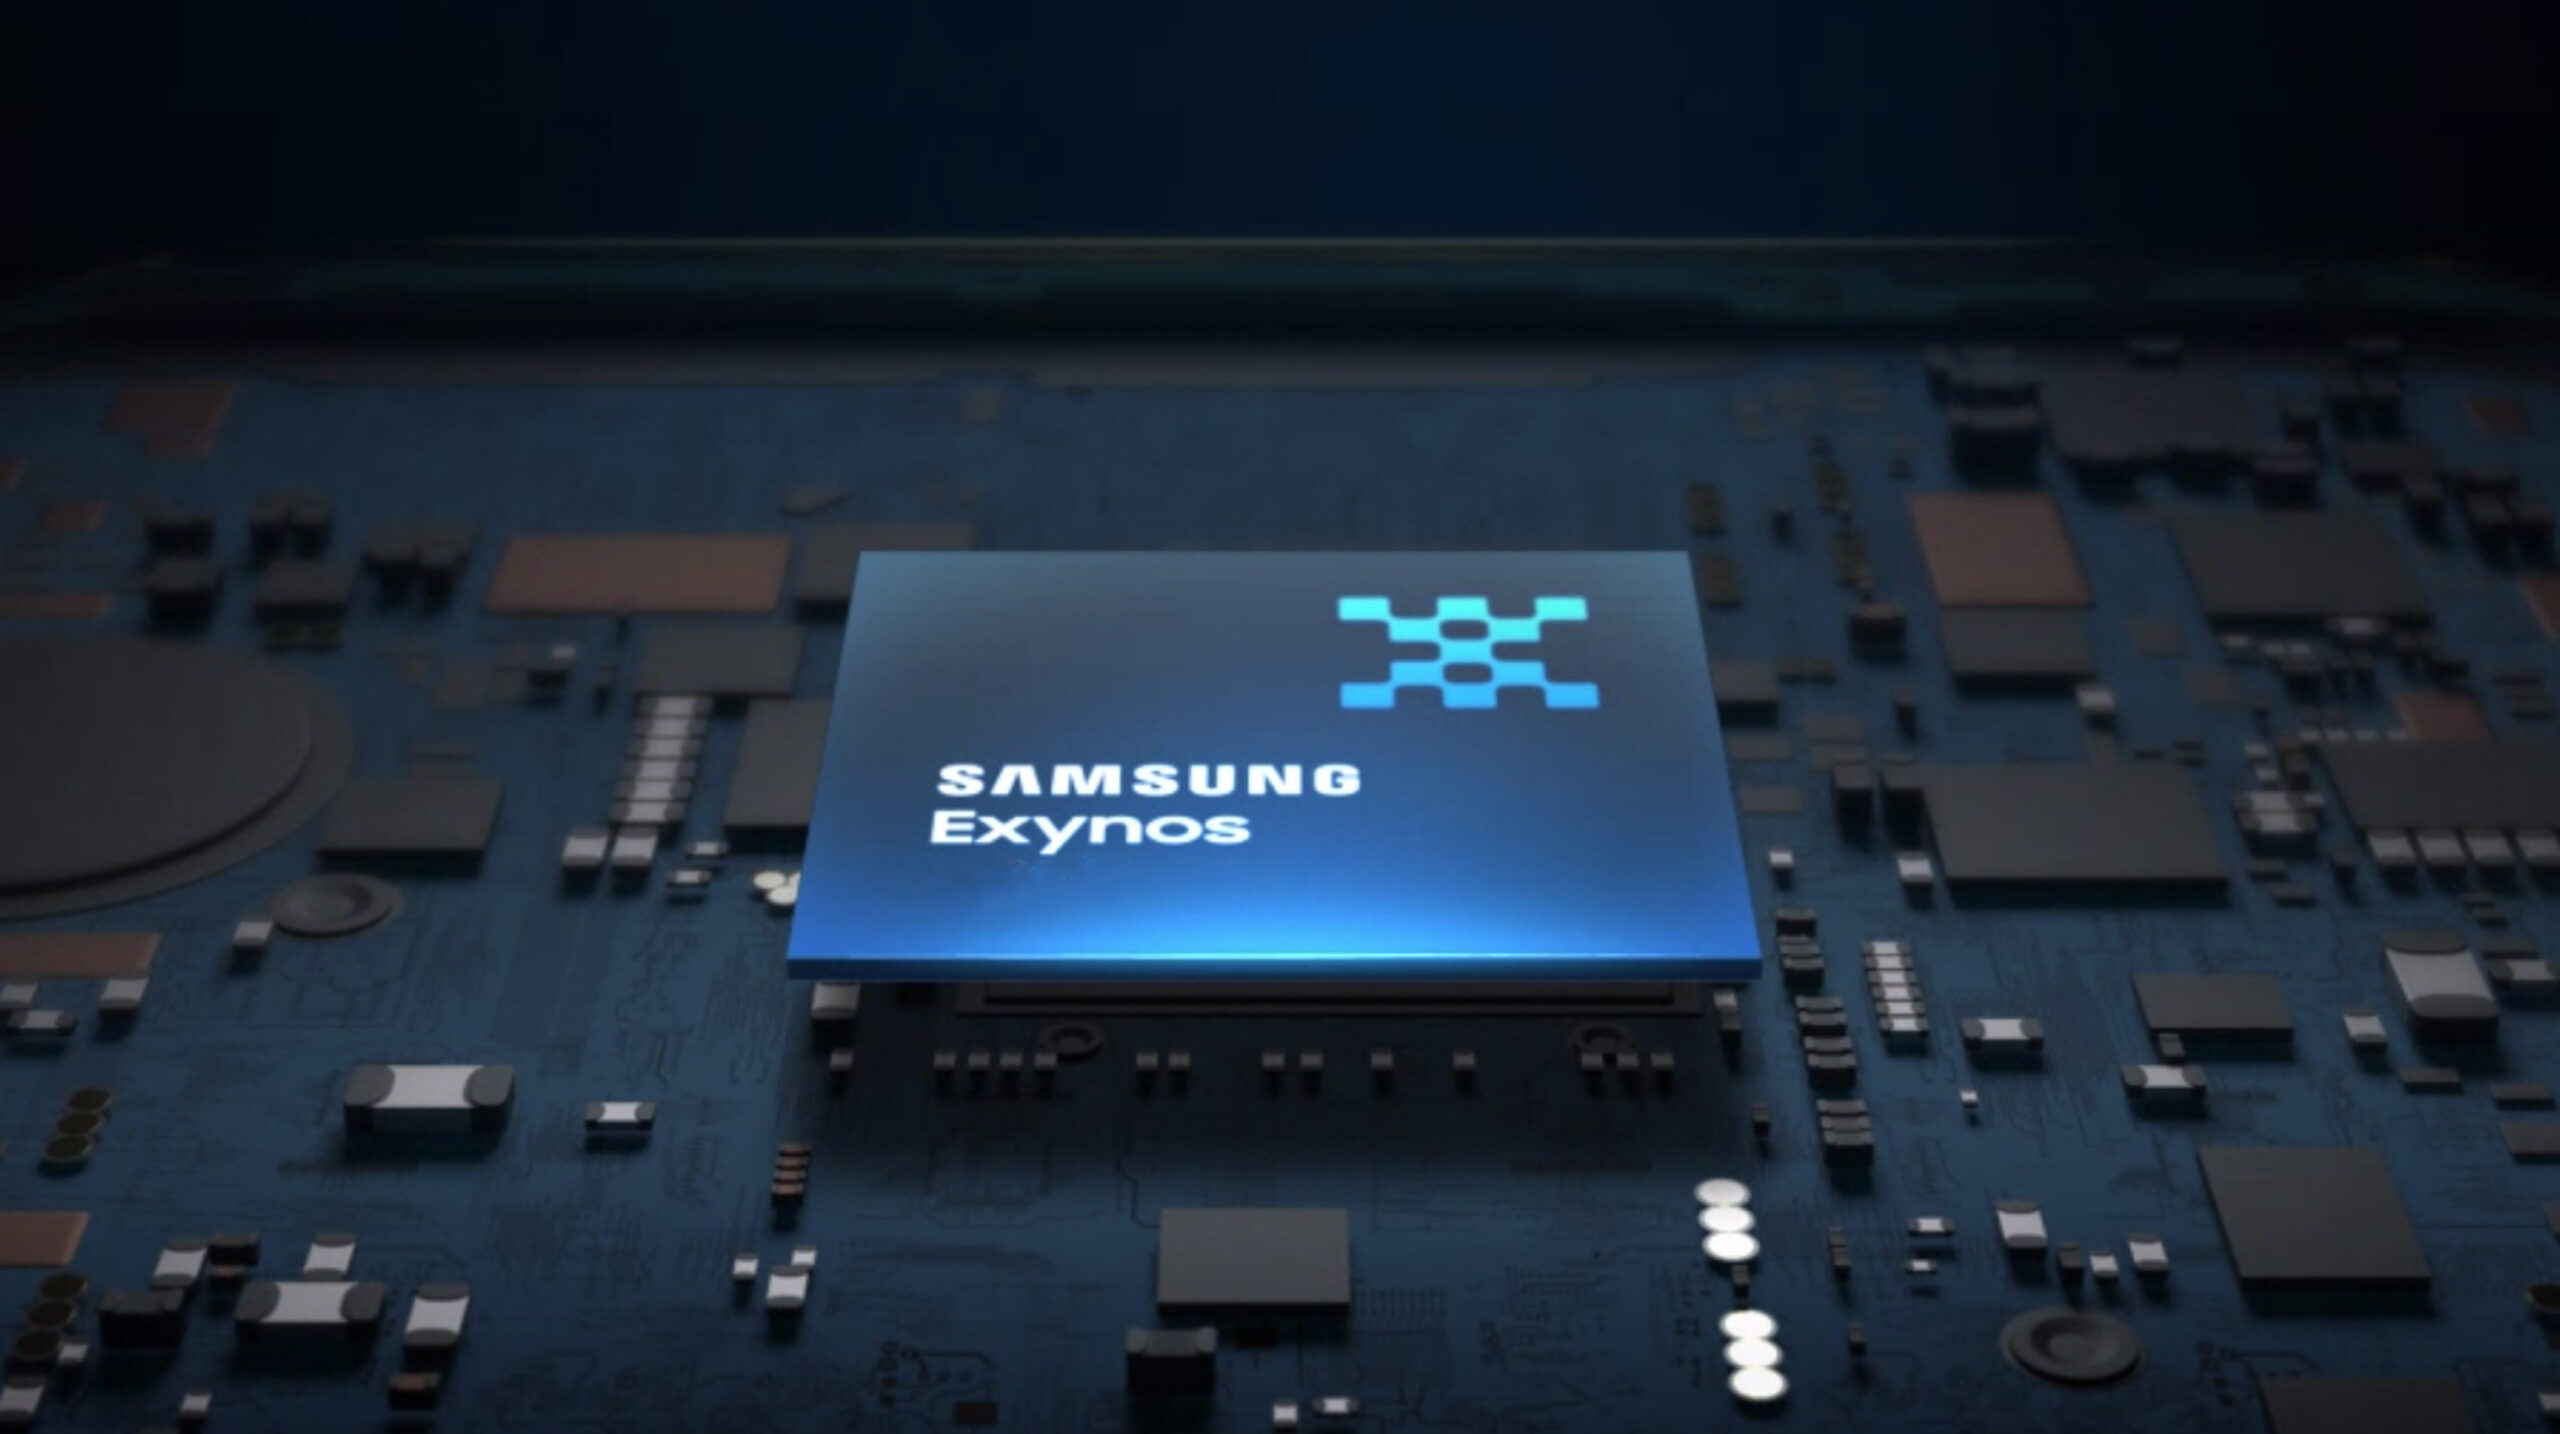 Procesor dla nowego flagowego Galaxy S22: Samsung zaprezentuje Exynos 2200 z grafiką AMD 11 stycznia